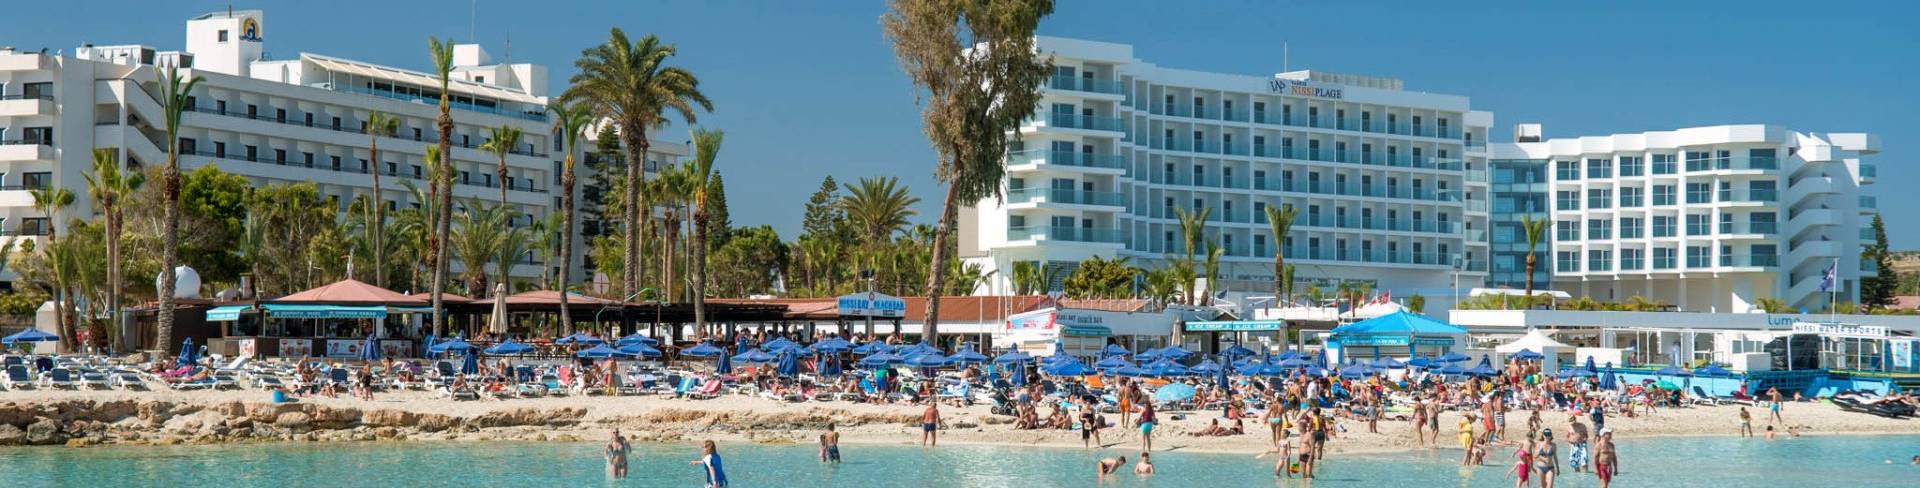 Айя-Напа - пляжный курорт на Кипре